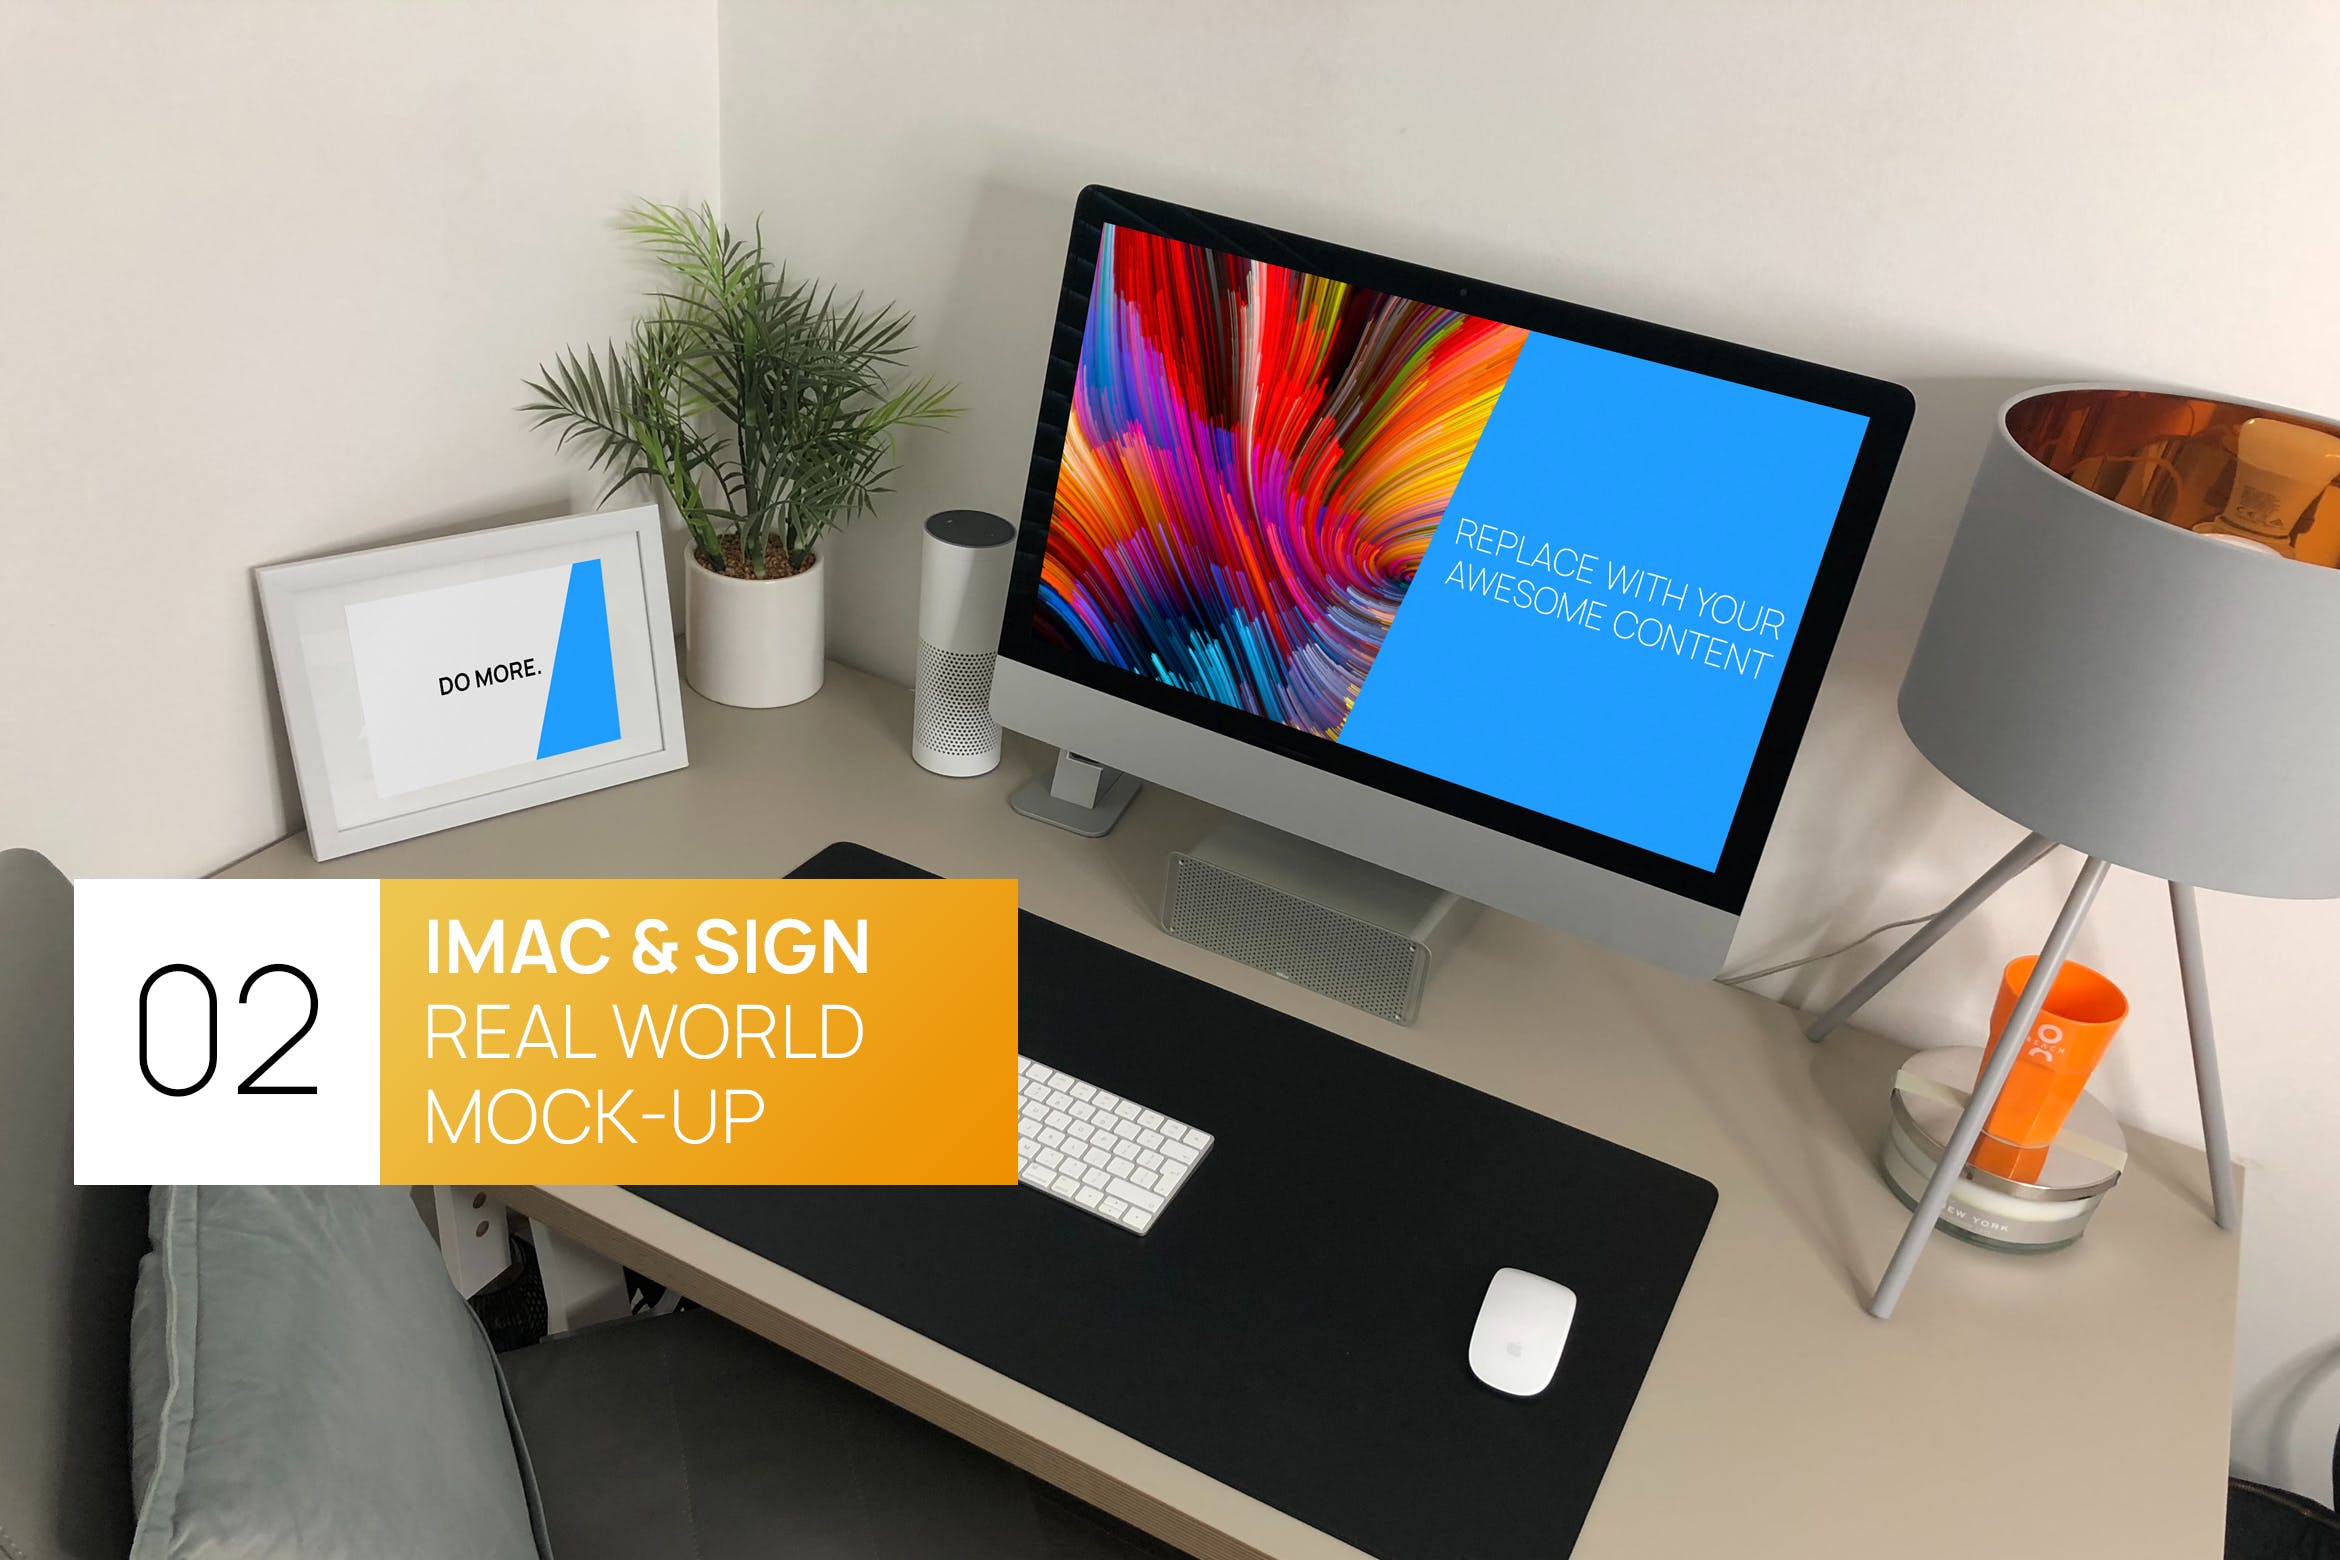 宜家家居风格办公桌场景27寸iMac电脑蚂蚁素材精选样机 iMac 27 with Sign Real World Photo Mock-up插图